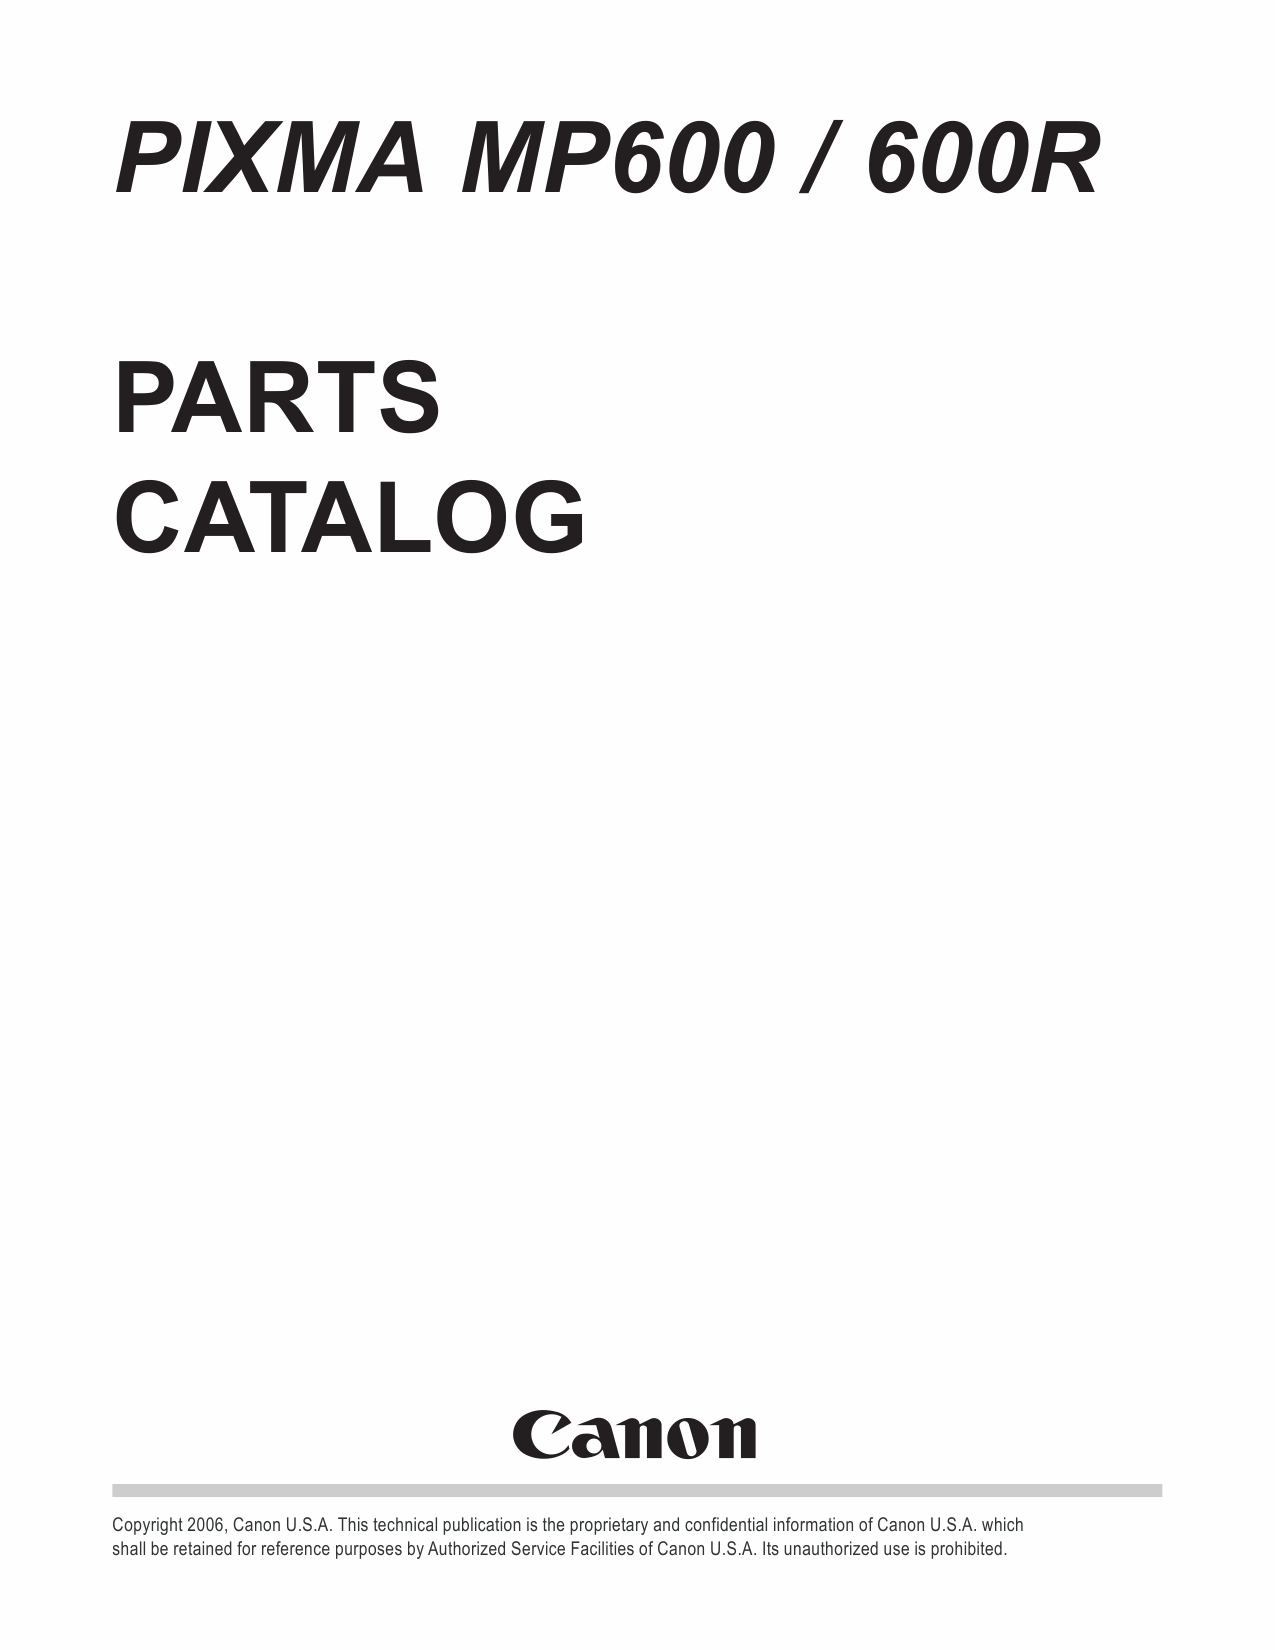 Canon PIXMA MP600 MP600R Parts Catalog Manual-1